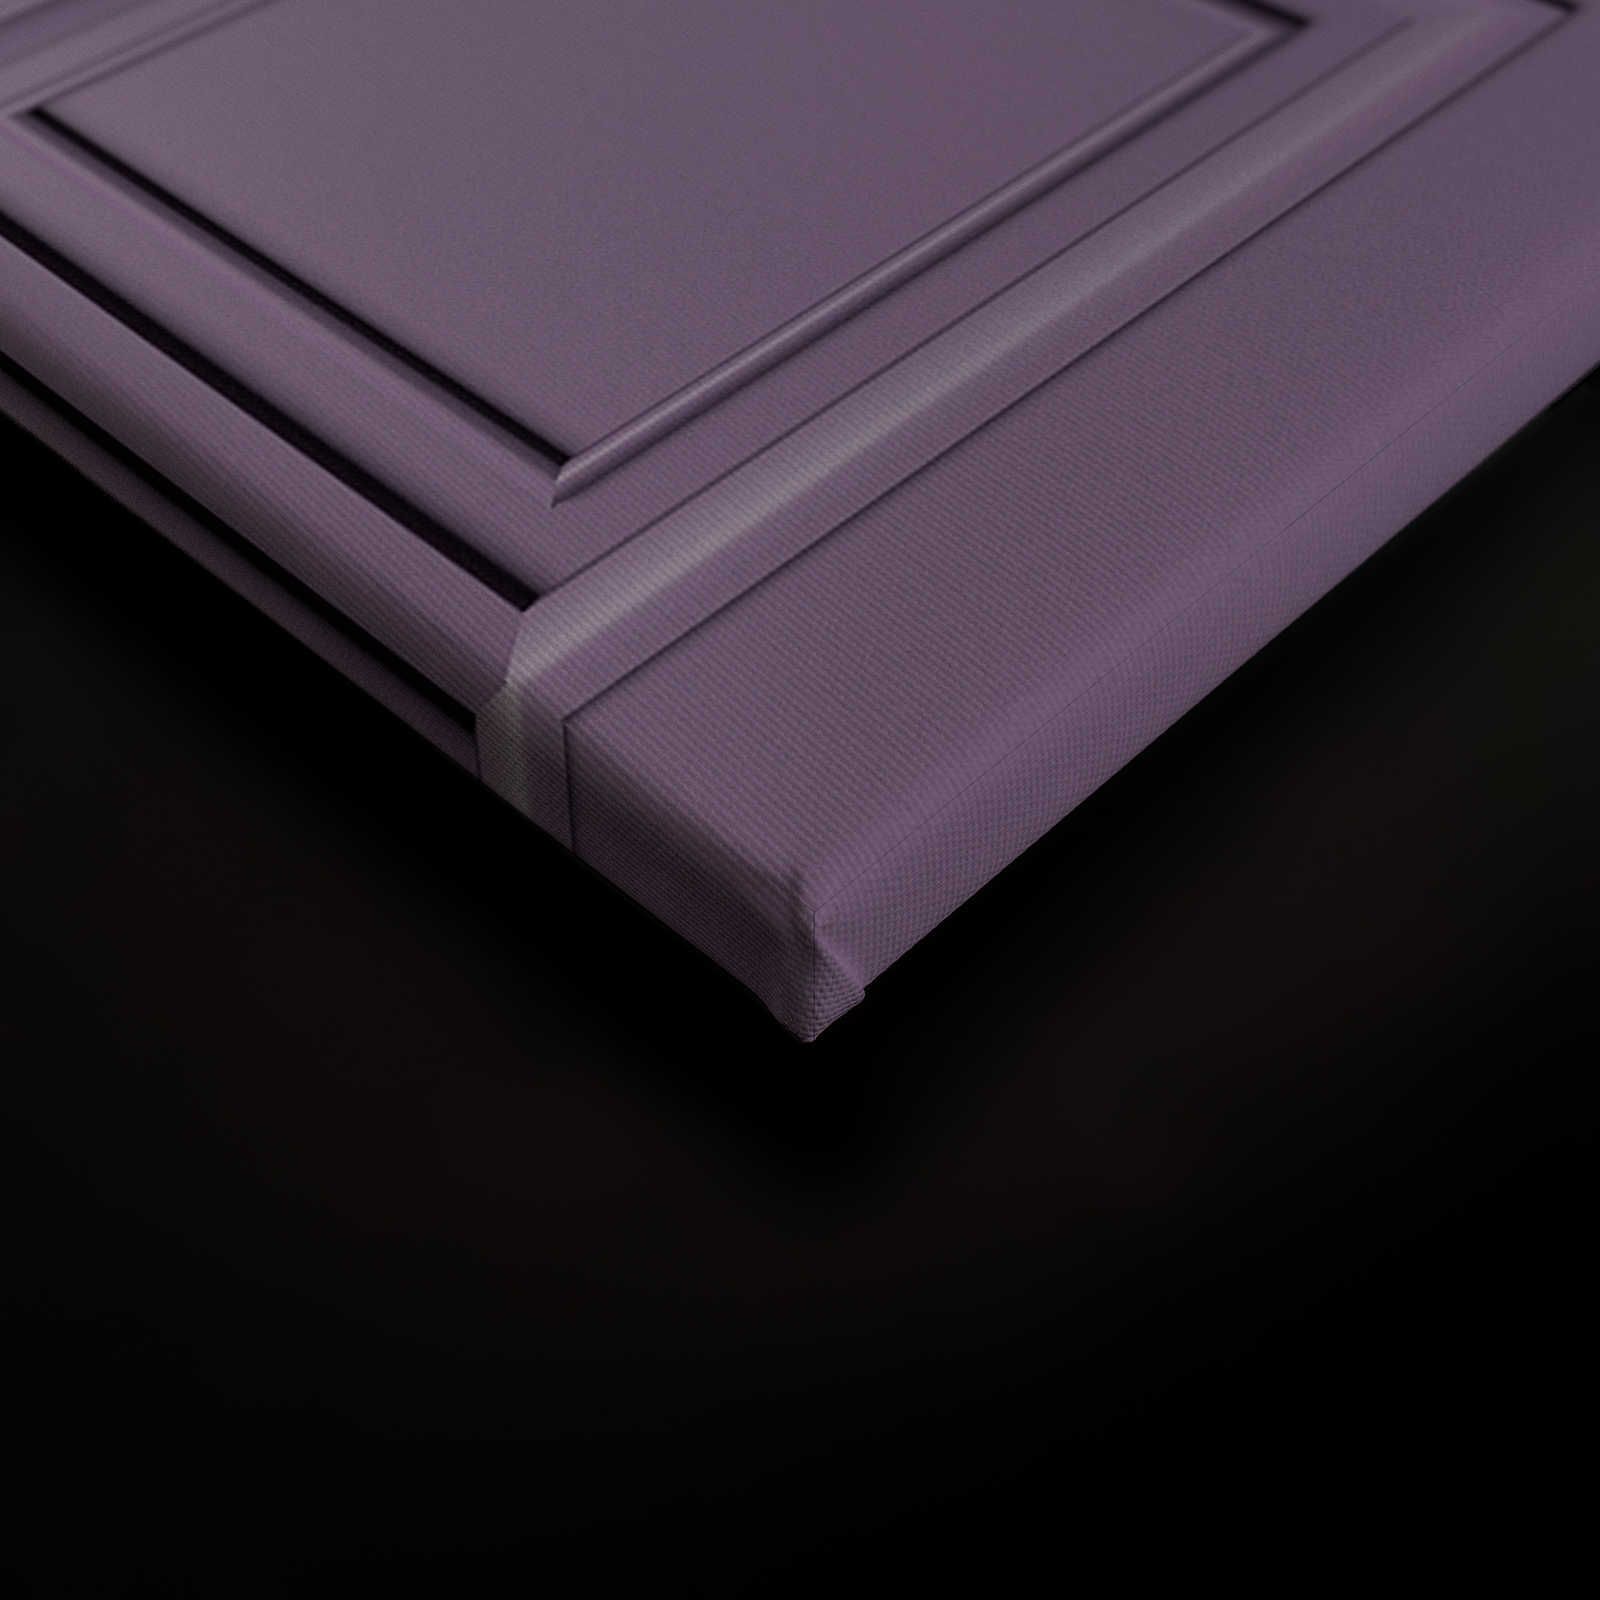             Kensington 3 - Quadro 3D in legno viola scuro, viola - 0,90 m x 0,60 m
        